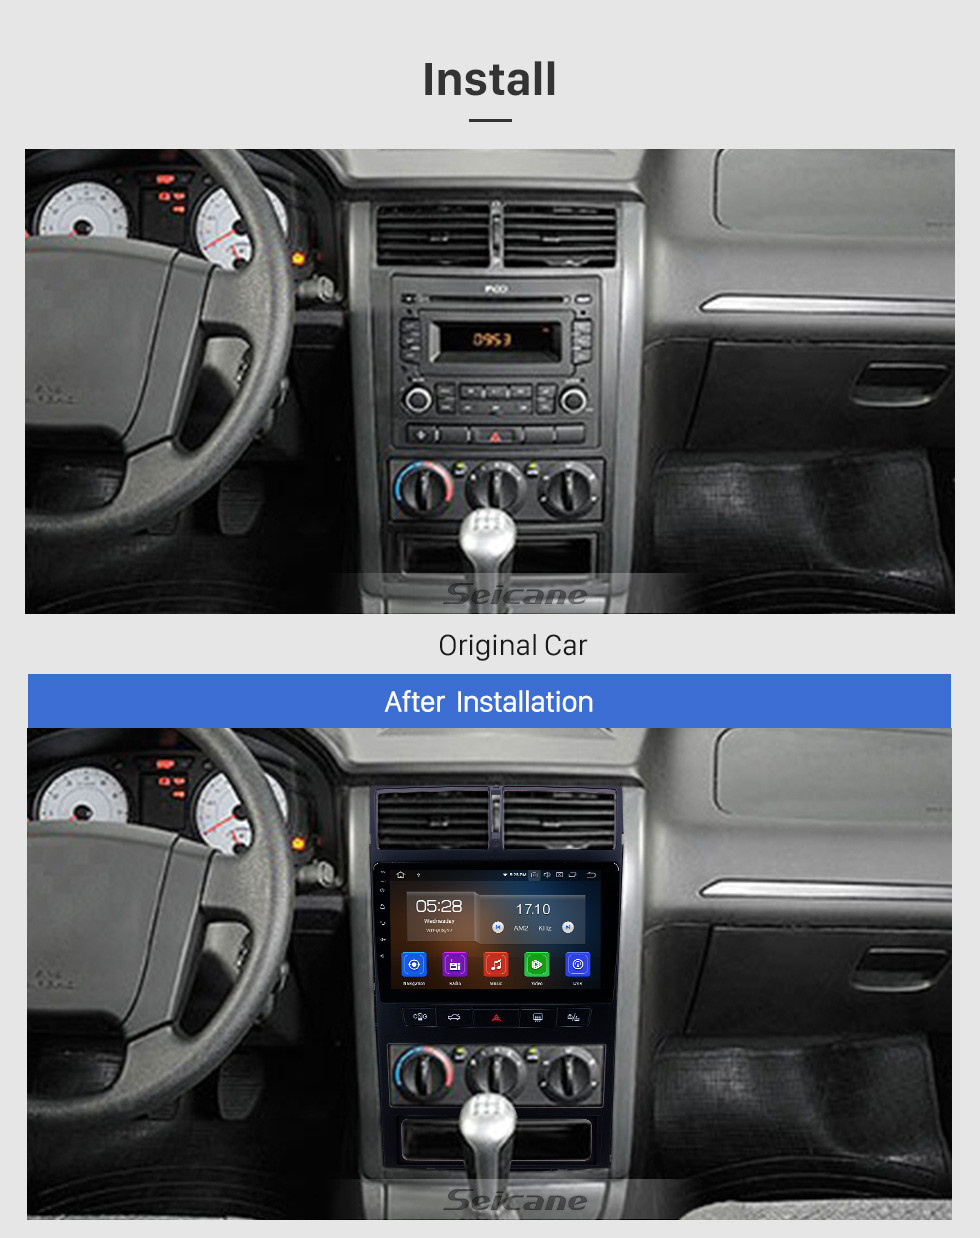 Seicane Pantalla táctil HD Peugeot 405 Android 11.0 9 pulgadas Navegación GPS Radio Bluetooth USB WIFI Carplay compatible con DAB + TPMS Cámara de visión trasera